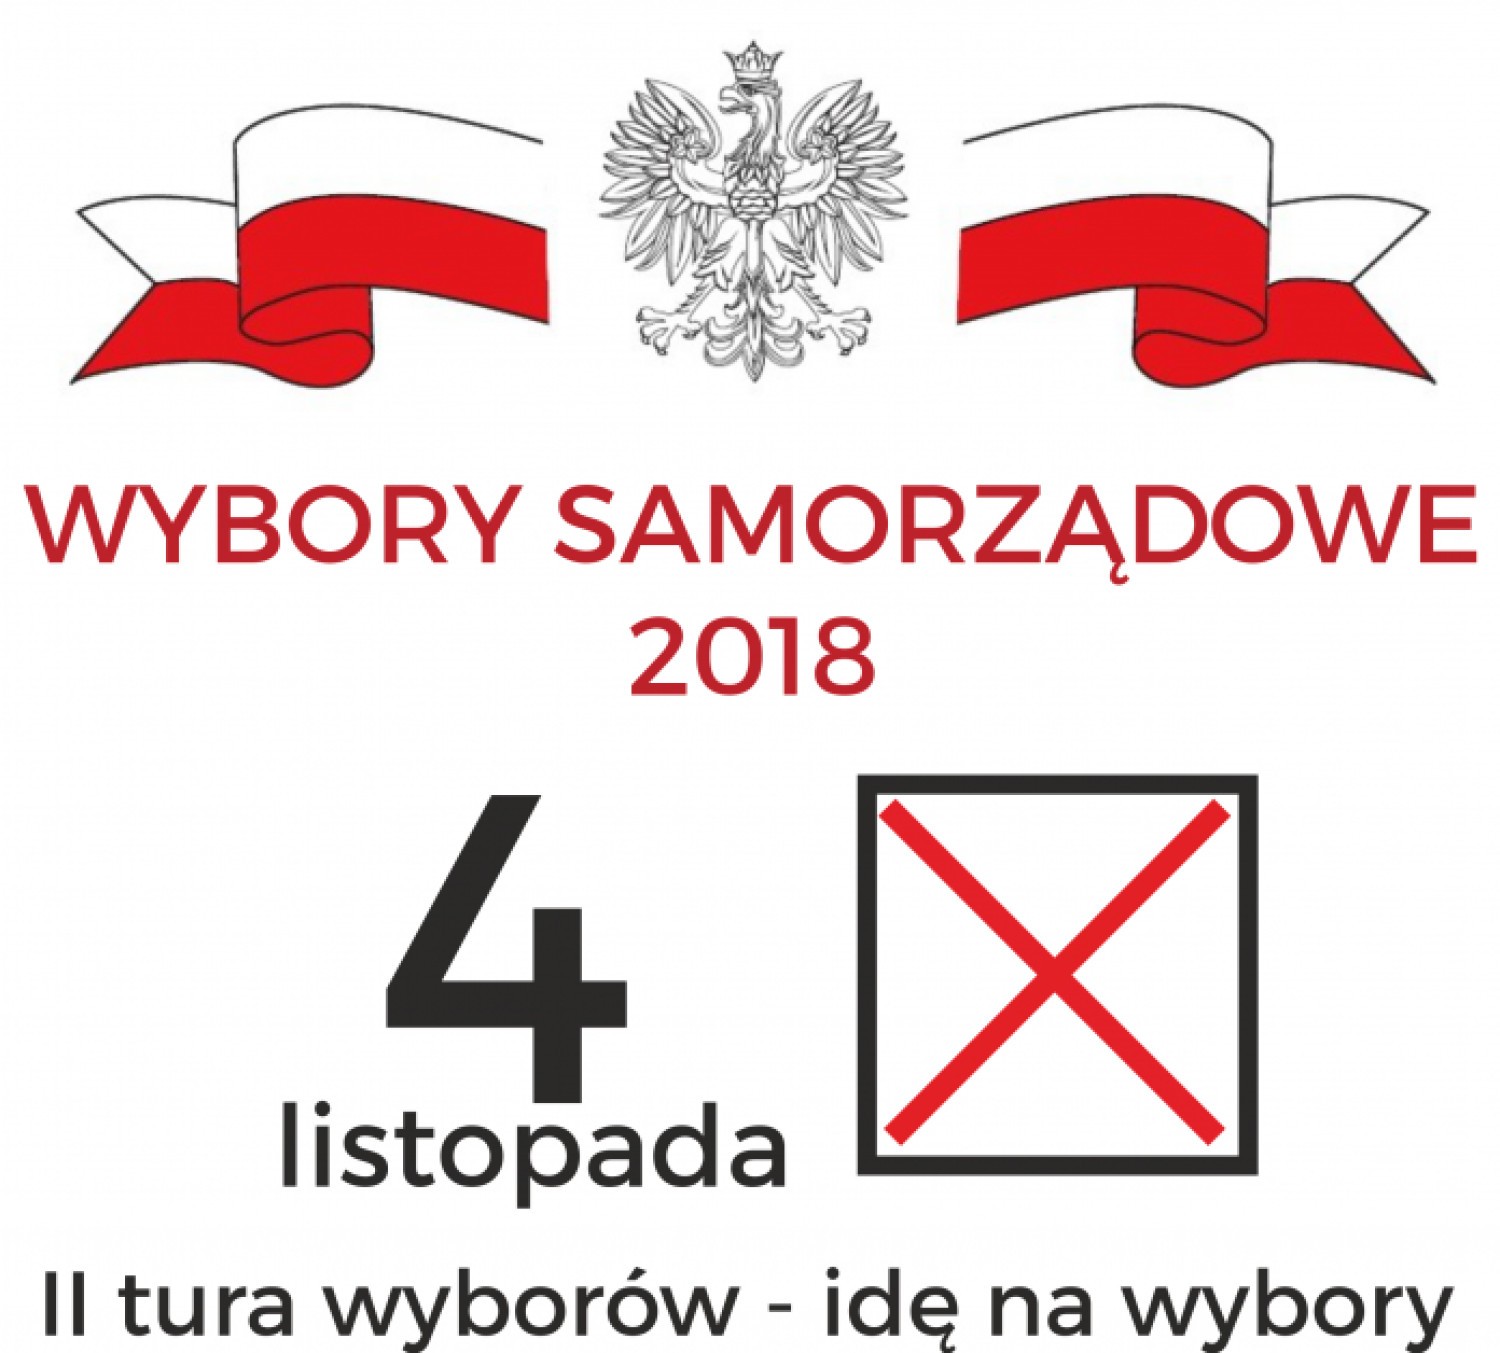 Wybory samorządowe 2018 Piaseczno - kiedy II. tura?